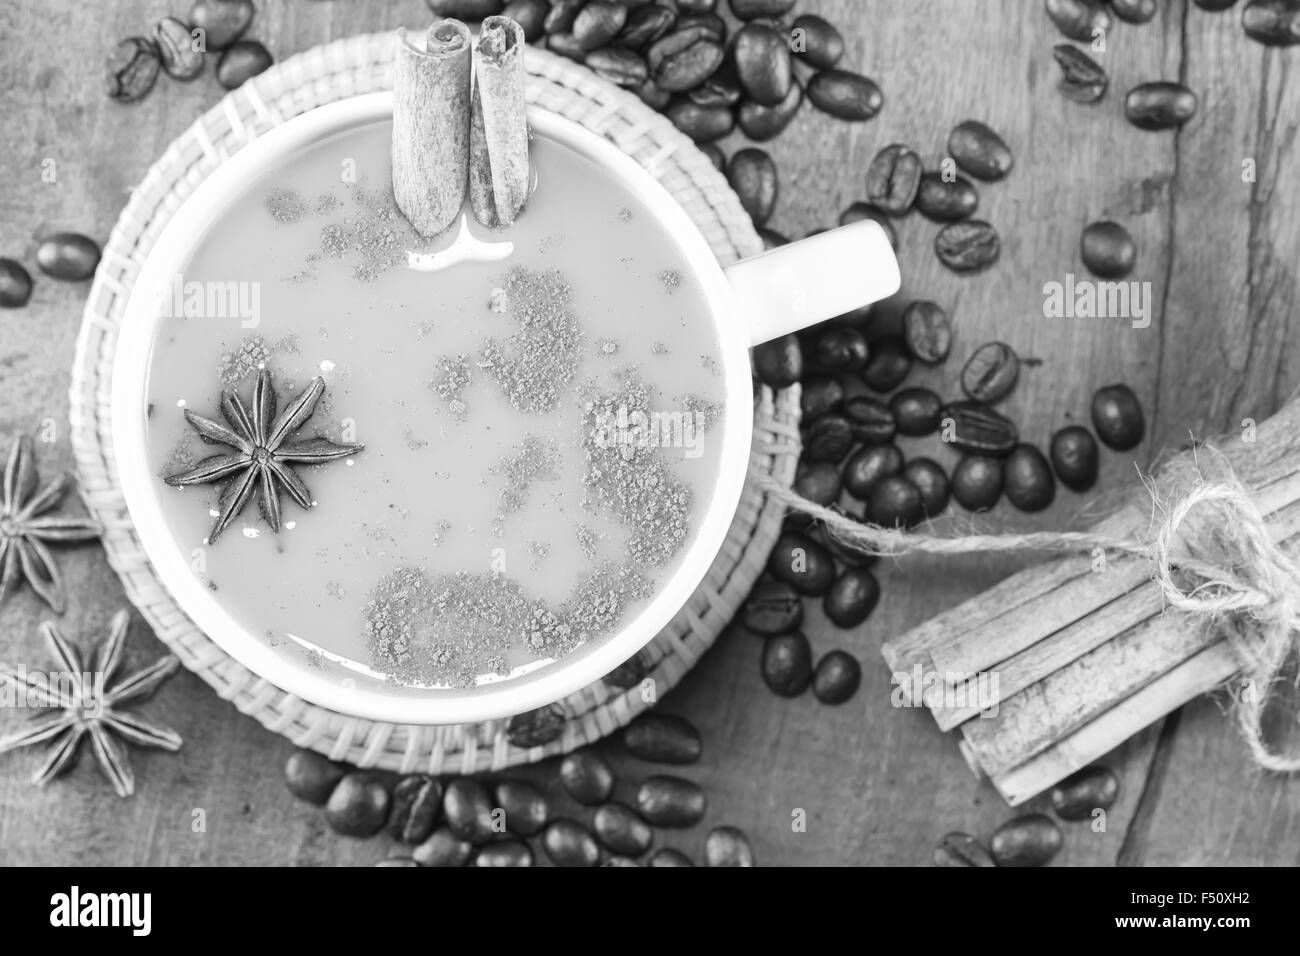 Kaffee in der Tasse mit Kaffeebohnen und Zimt klebt auf Holz Hintergrund auf schwarz und weiß, selektiven Fokus Stockfoto